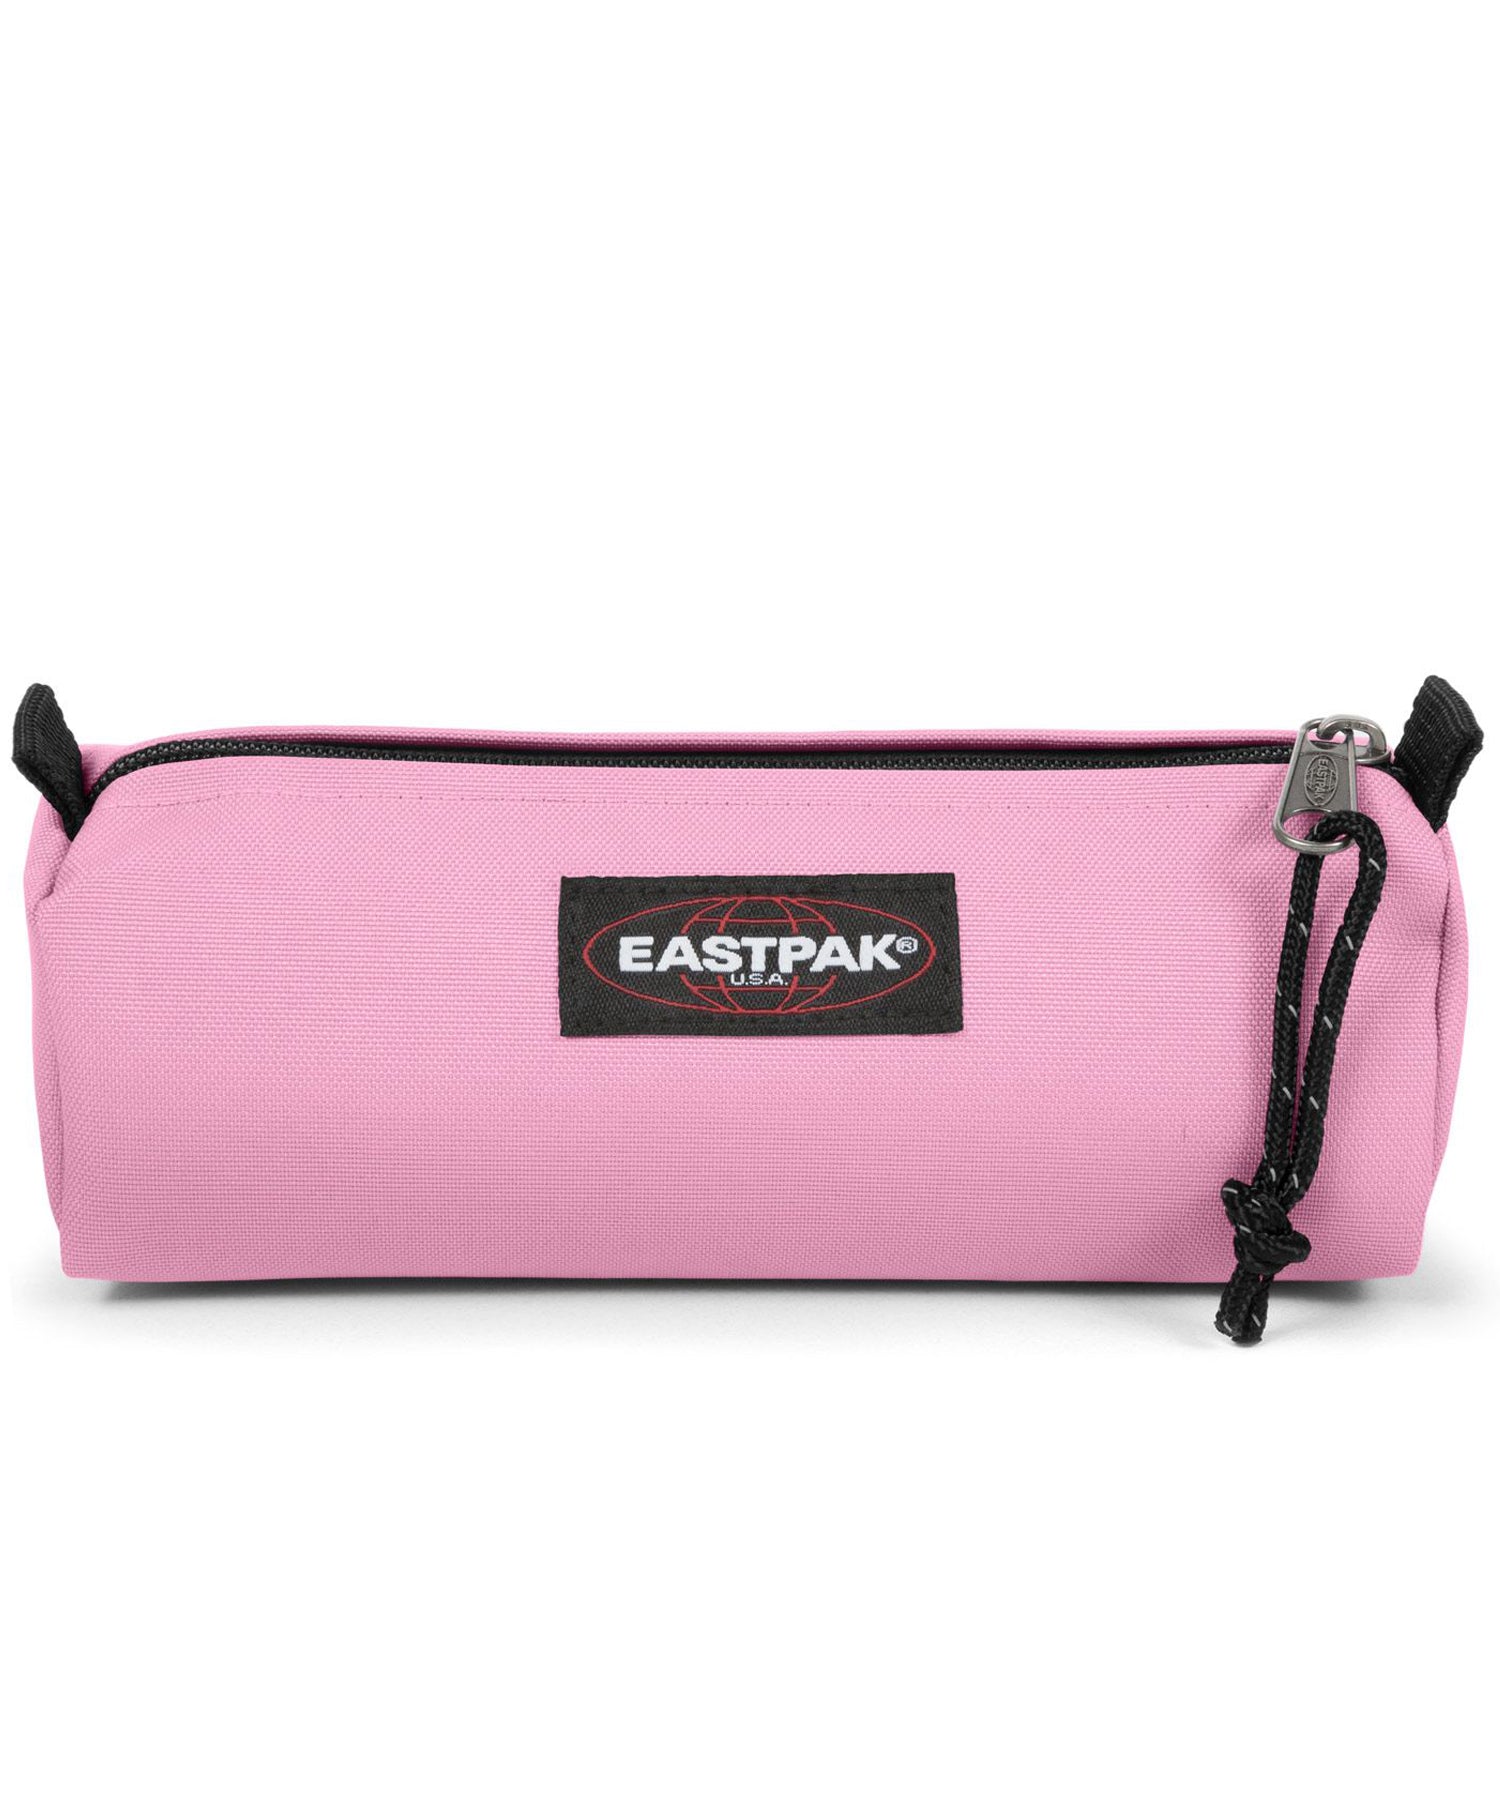 eastpak estuche benchmark de color rosa claro, practico, sencillo, y duradero, cierre con cremallera.